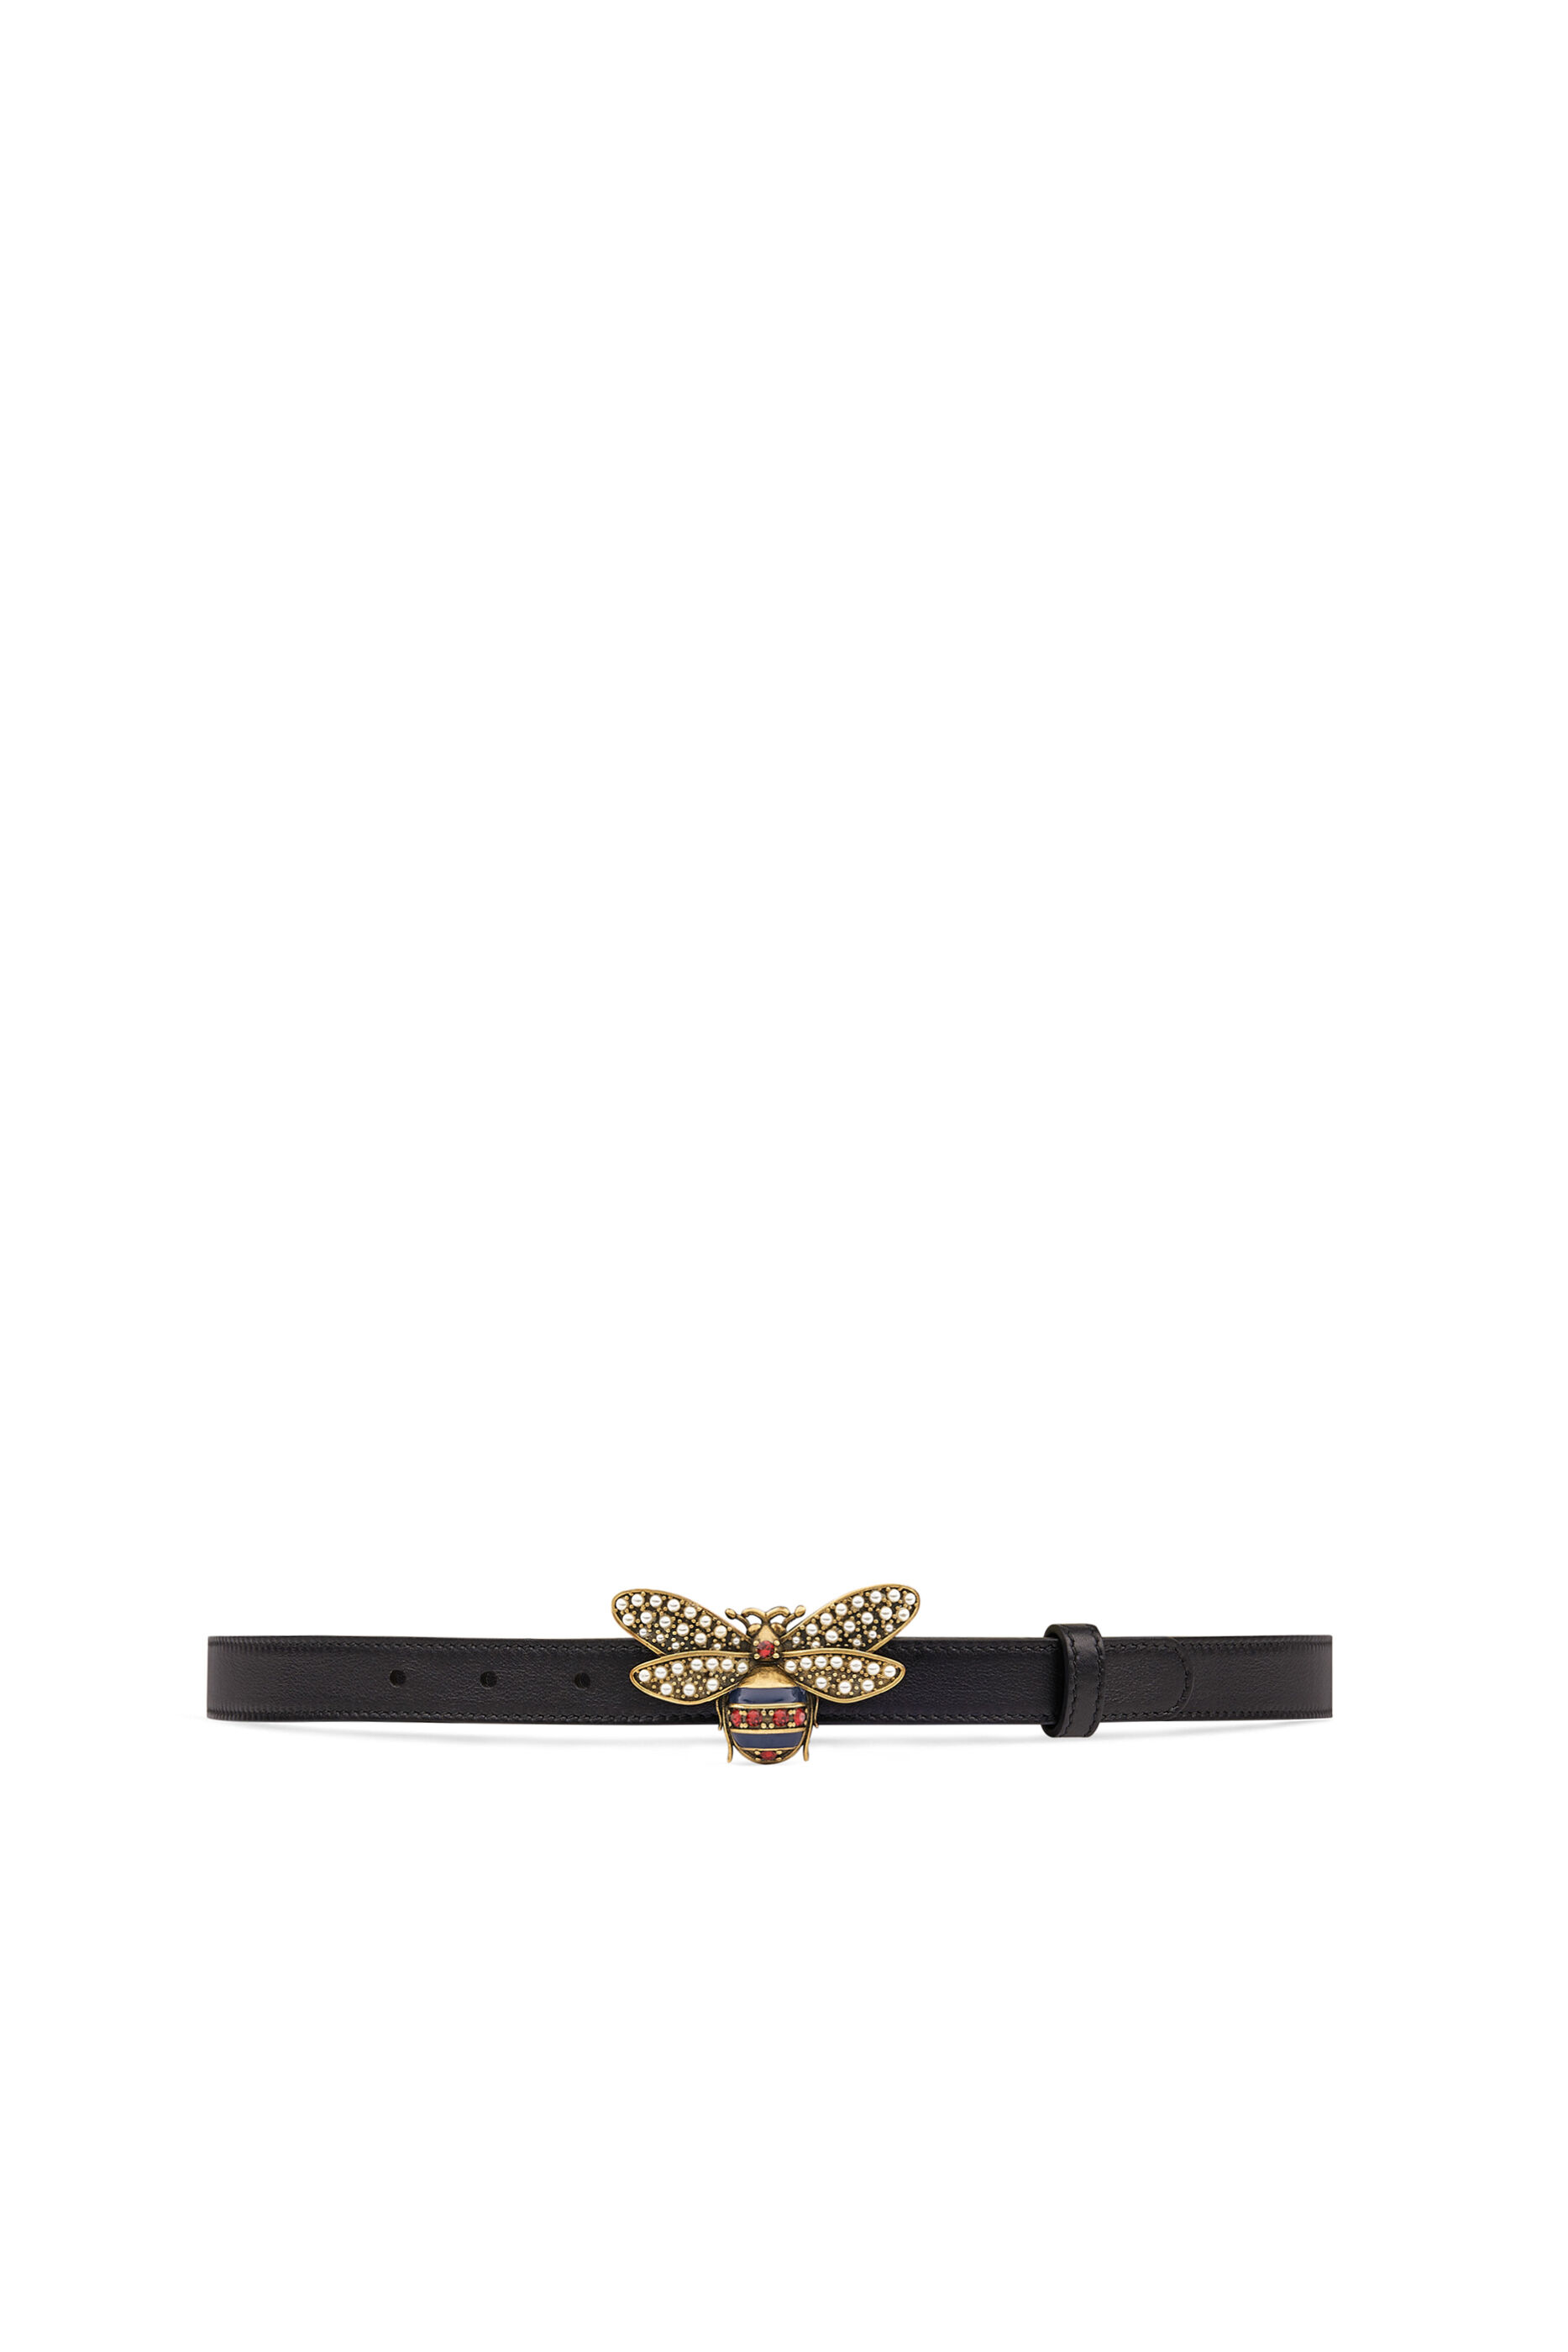 queen margaret leather belt